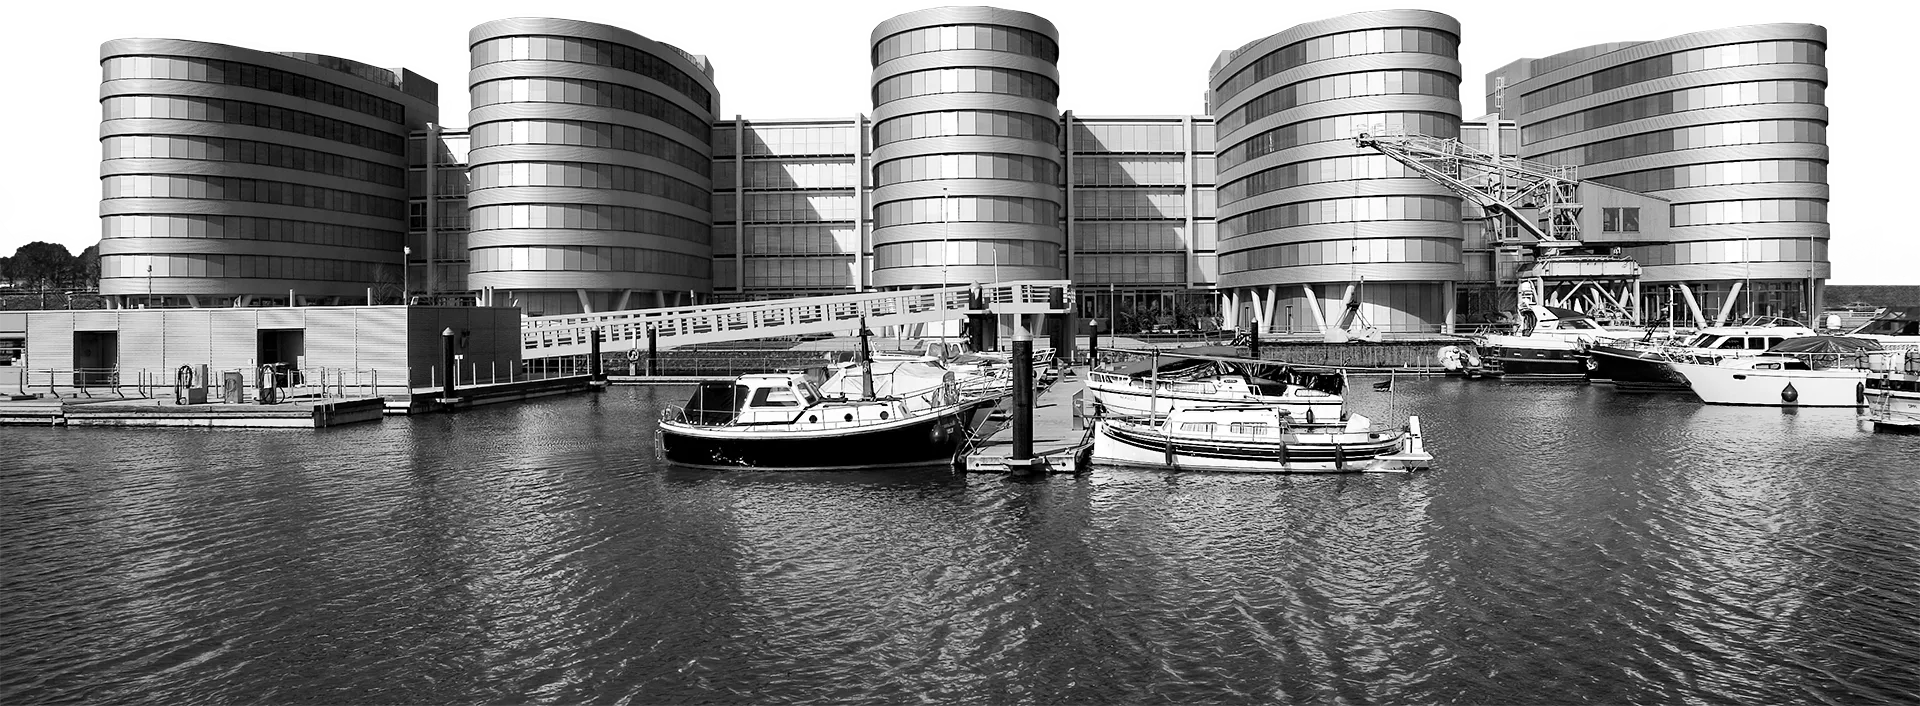 Five Boats in Duisburg schwarz-weiß